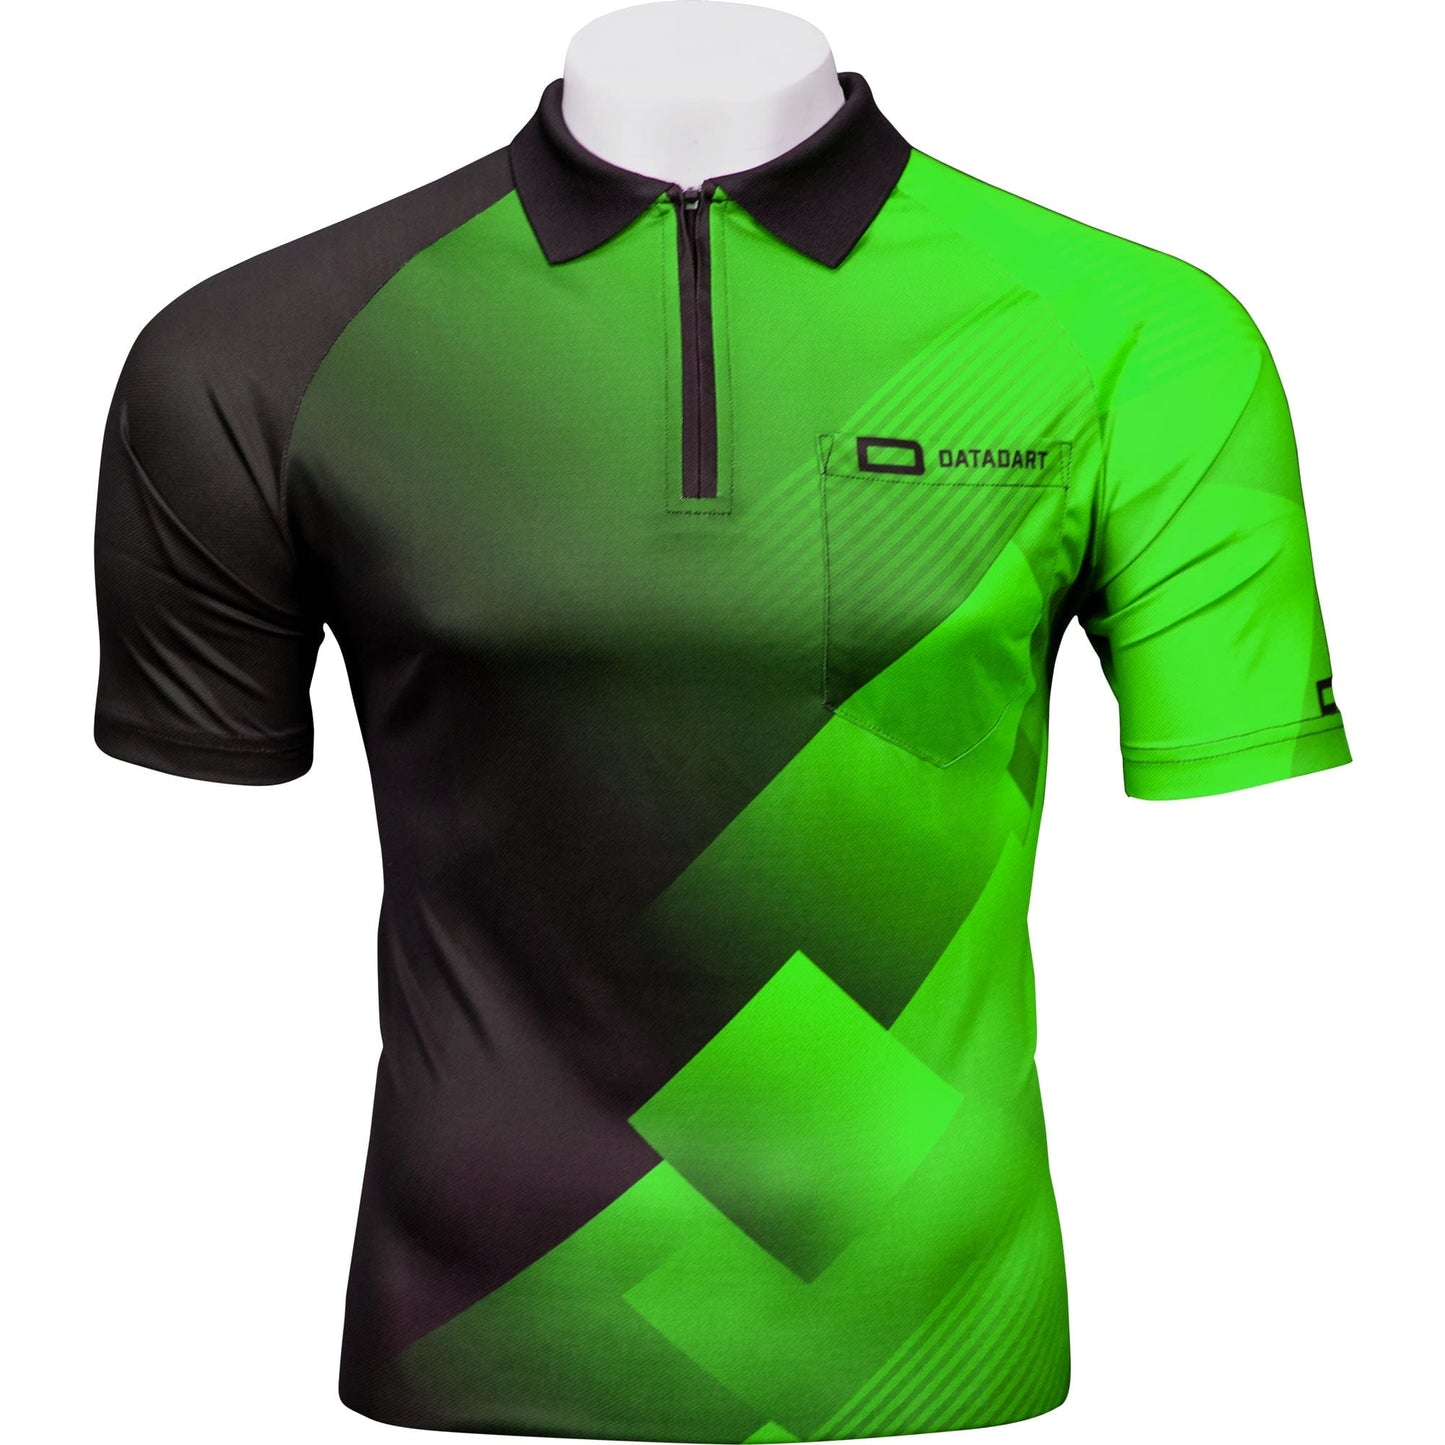 Datadart Vertex Dart Shirt - Comfort - Green